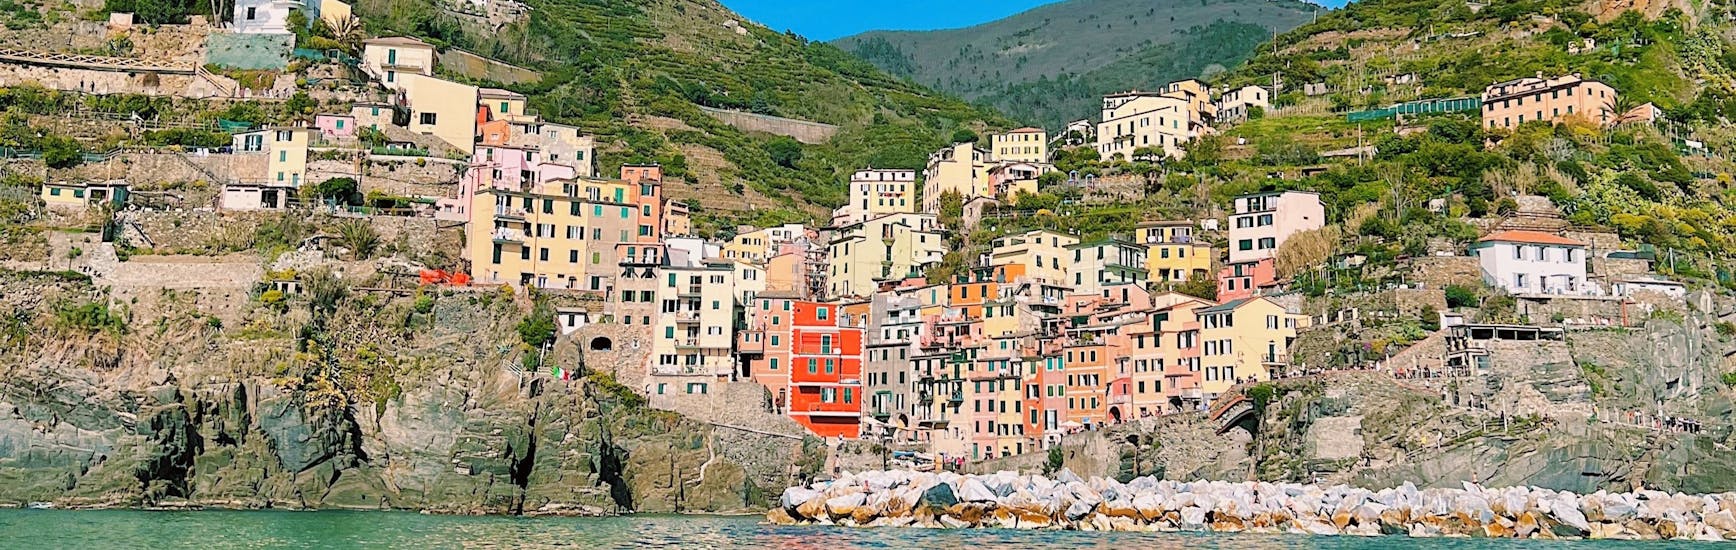 Riomaggiore vom Meer während der Segeltour von La Spezia nach Cinque Terre mit Mittagessen.